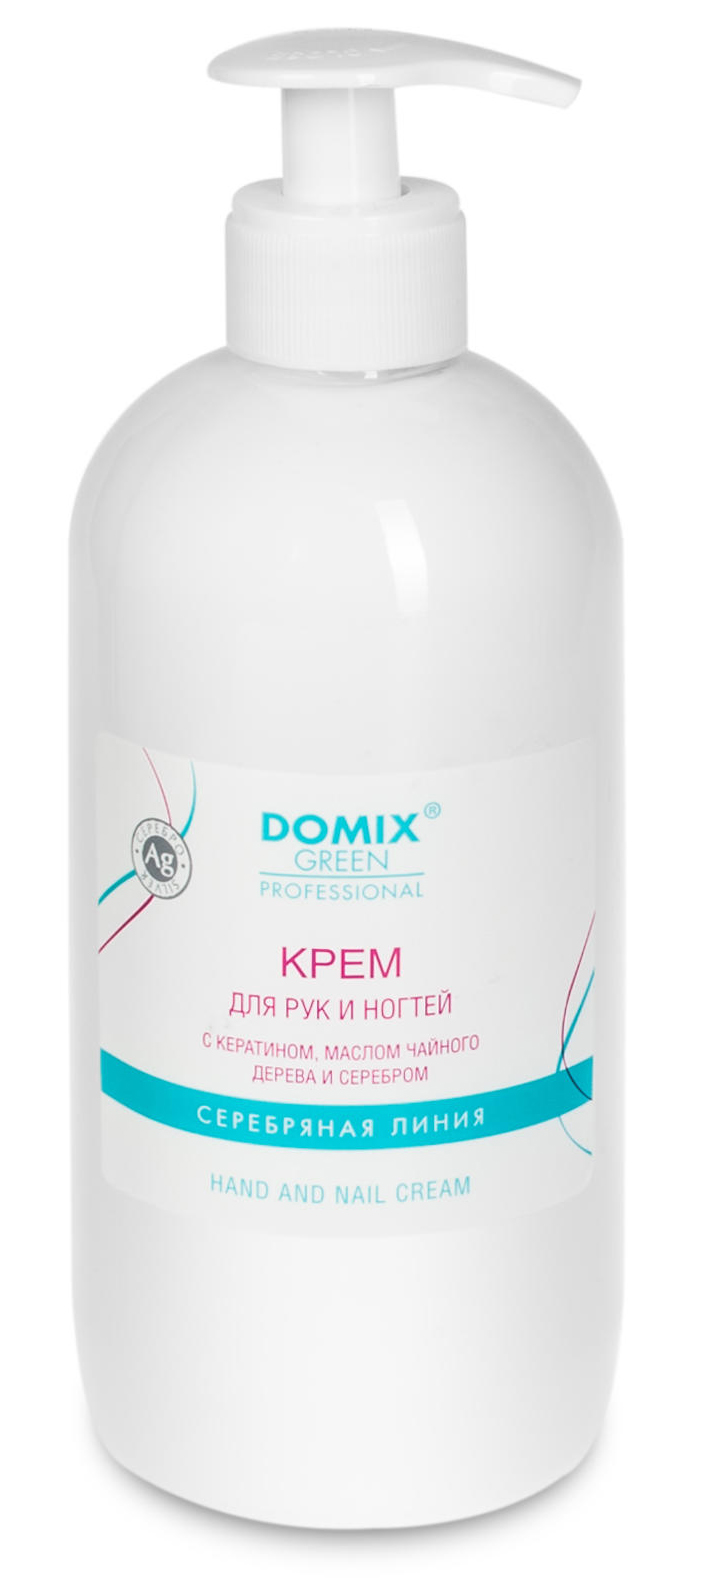 DOMIX Крем для рук и ногтей Domiks Green Professional с кератином, маслом чайного дерева 500 мл